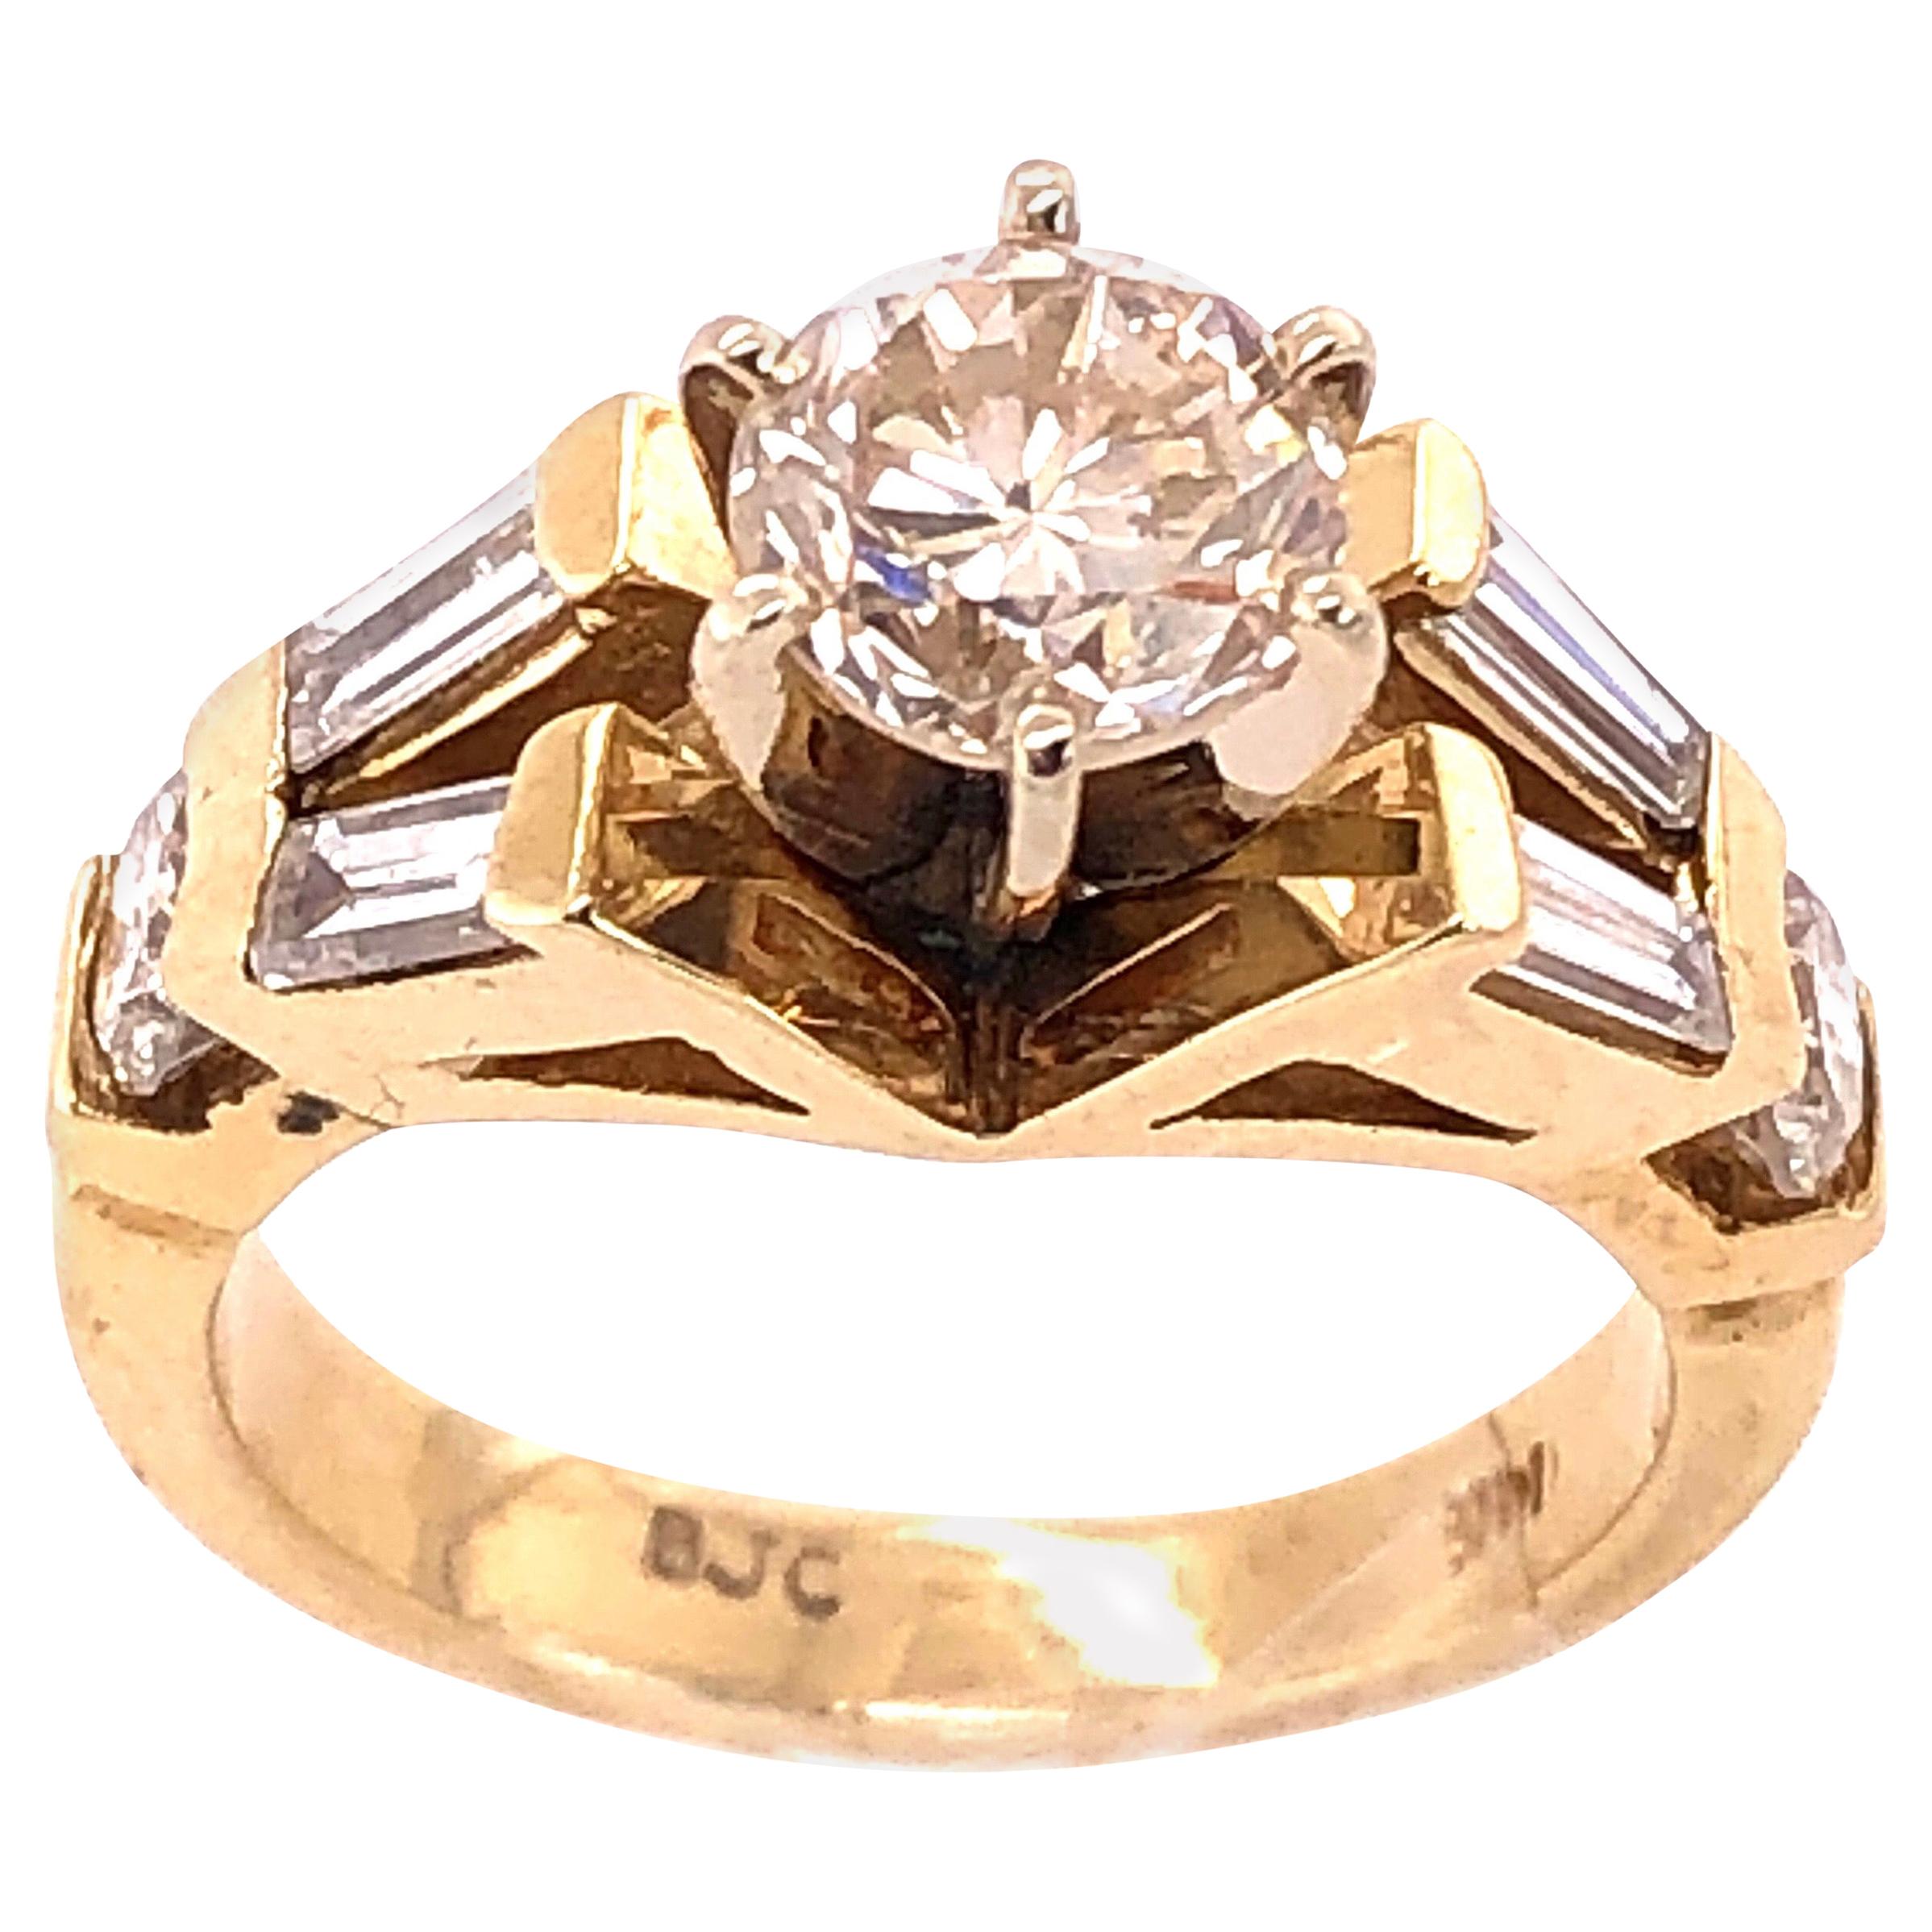 14 Karat Yellow Gold Engagement Ring 1.50 Total Diamond Weight